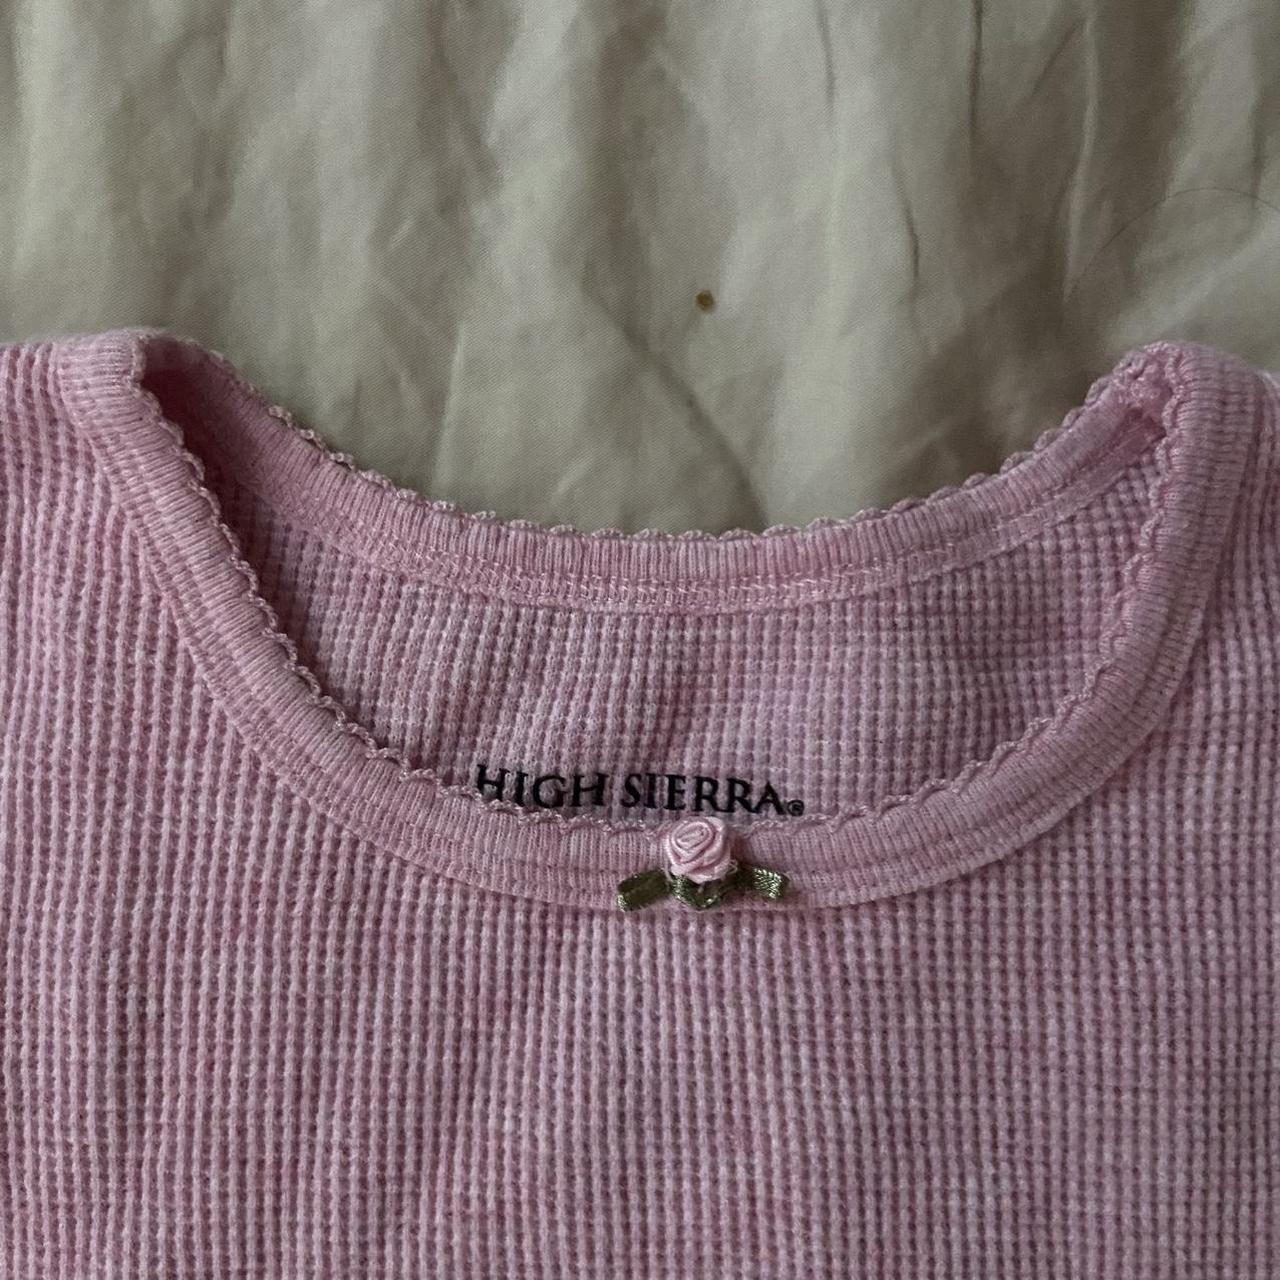 High Sierra Women's Pink Shirt (3)